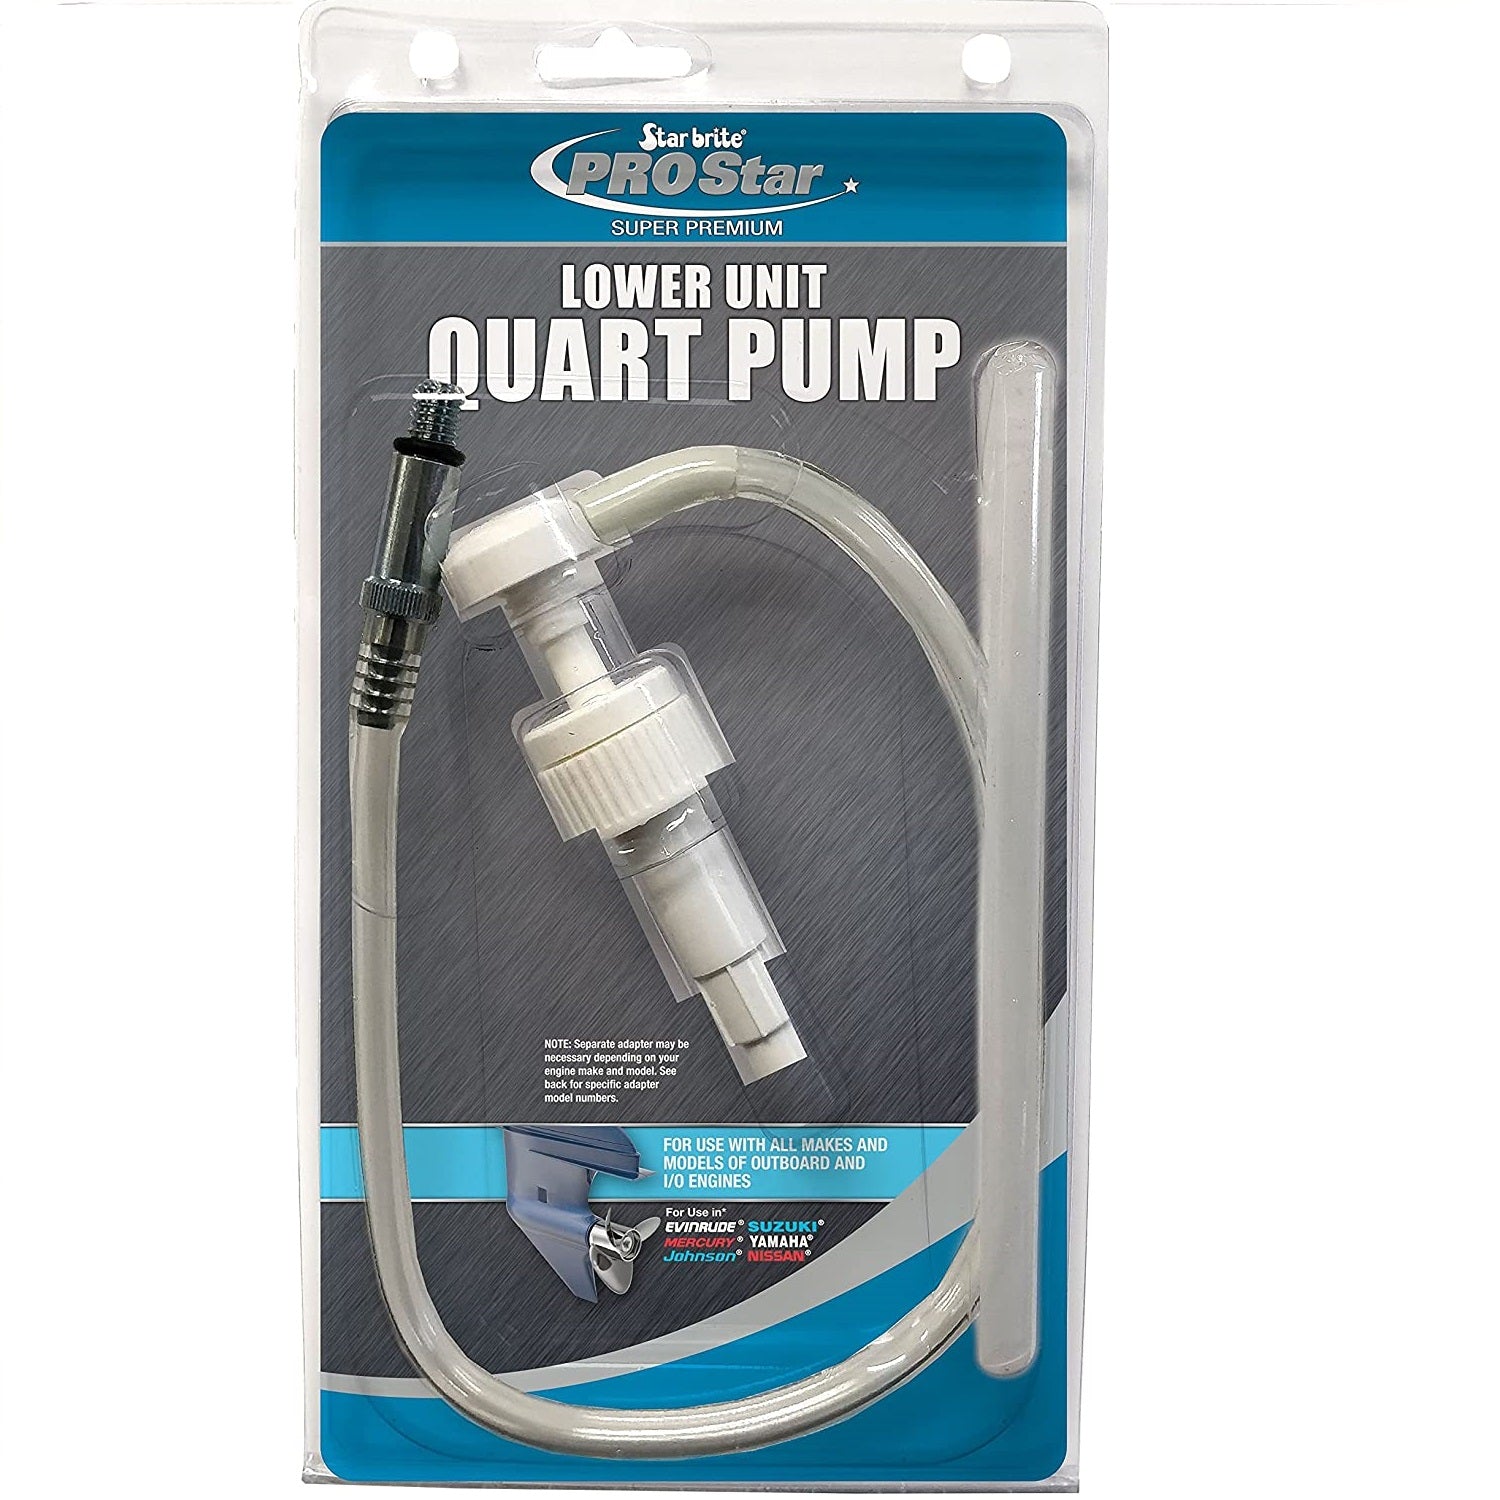 Lower Unit Quart Pump